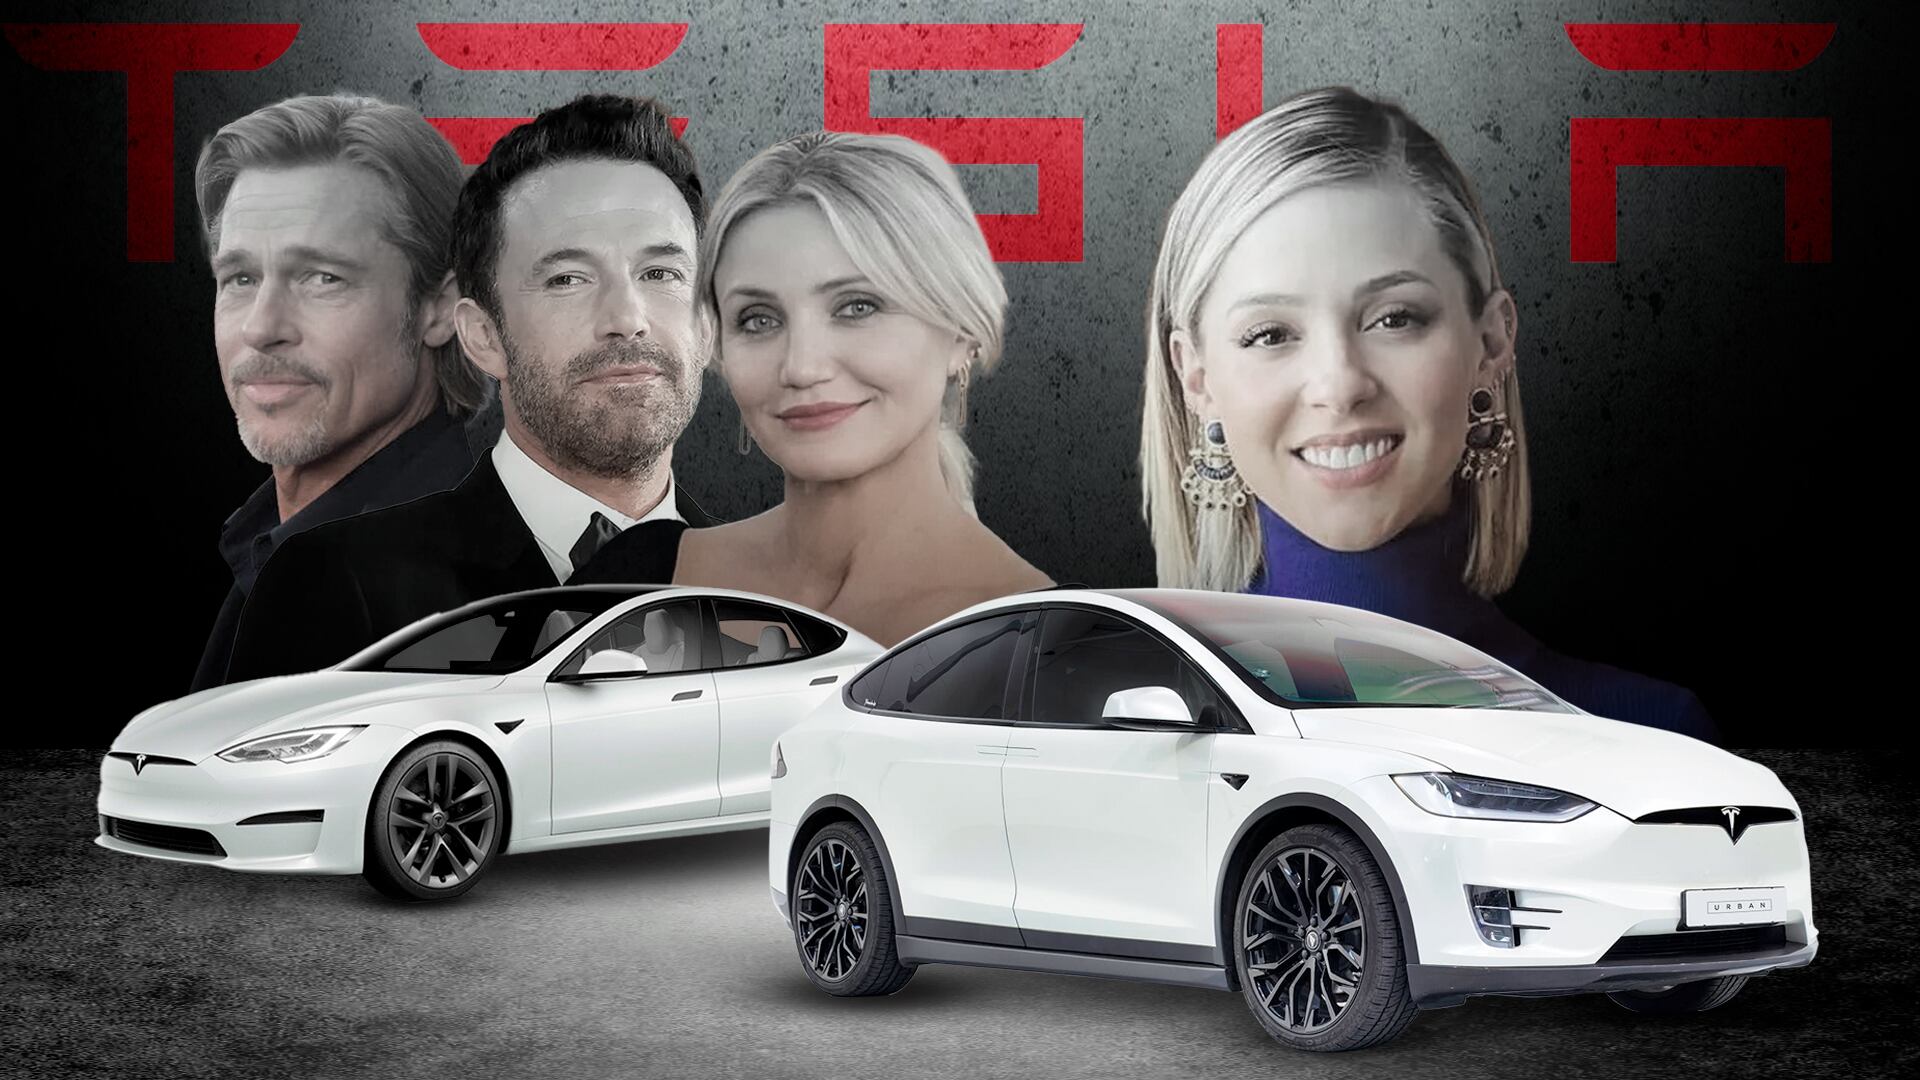 De Ben Affleck, Brad Pitt a Mariana Rodríguez: los famosos y sus millonarios vehículos Tesla(Foto: Infobae)